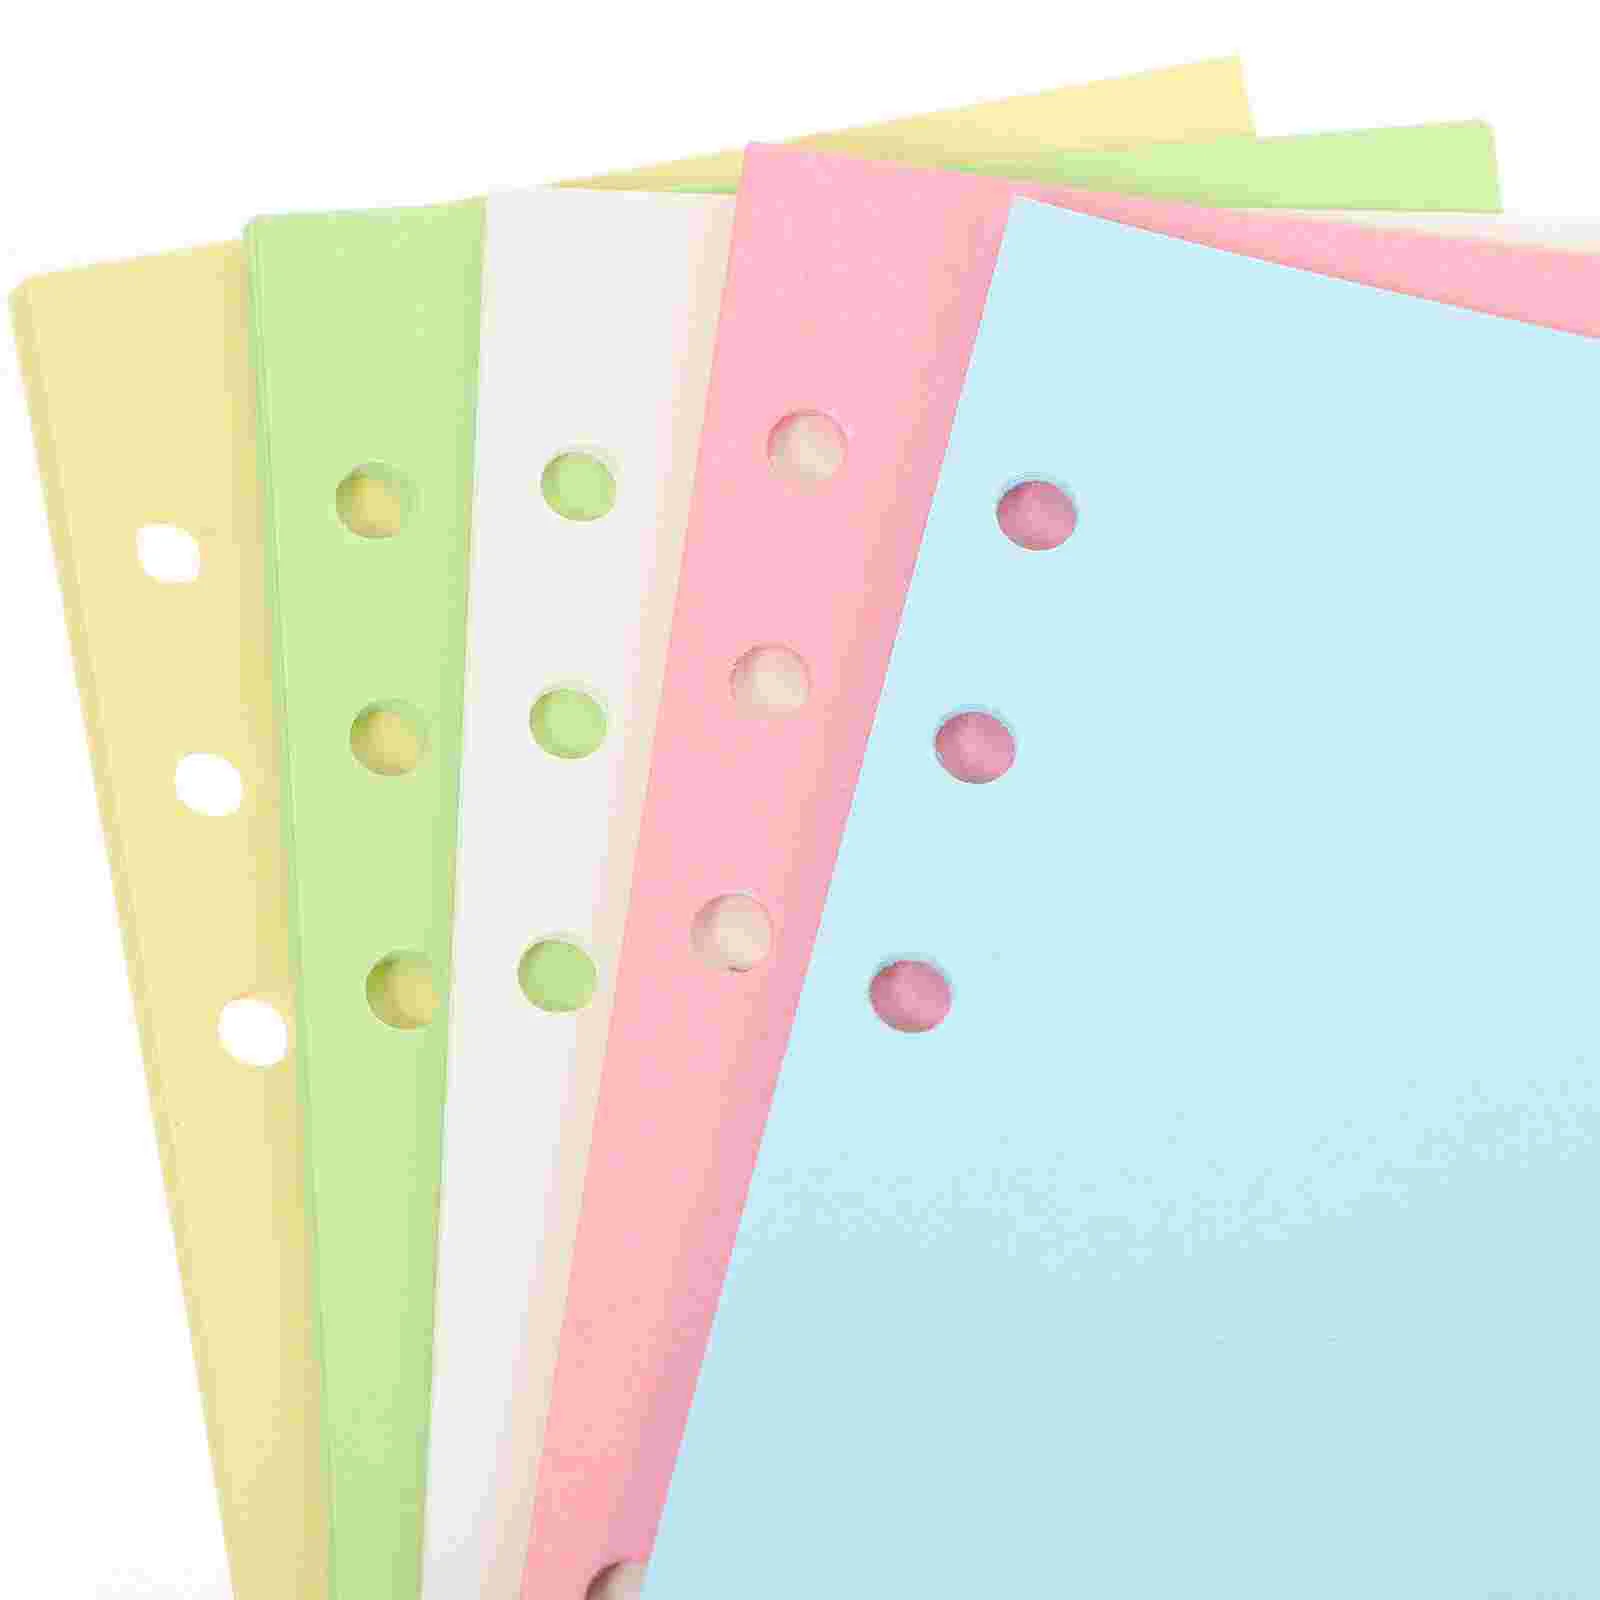 100 Listov 6-Jamkové Voľné-Listový Papier pre Plánovač Notebook Binder Náhradnú Náplň Farebné2